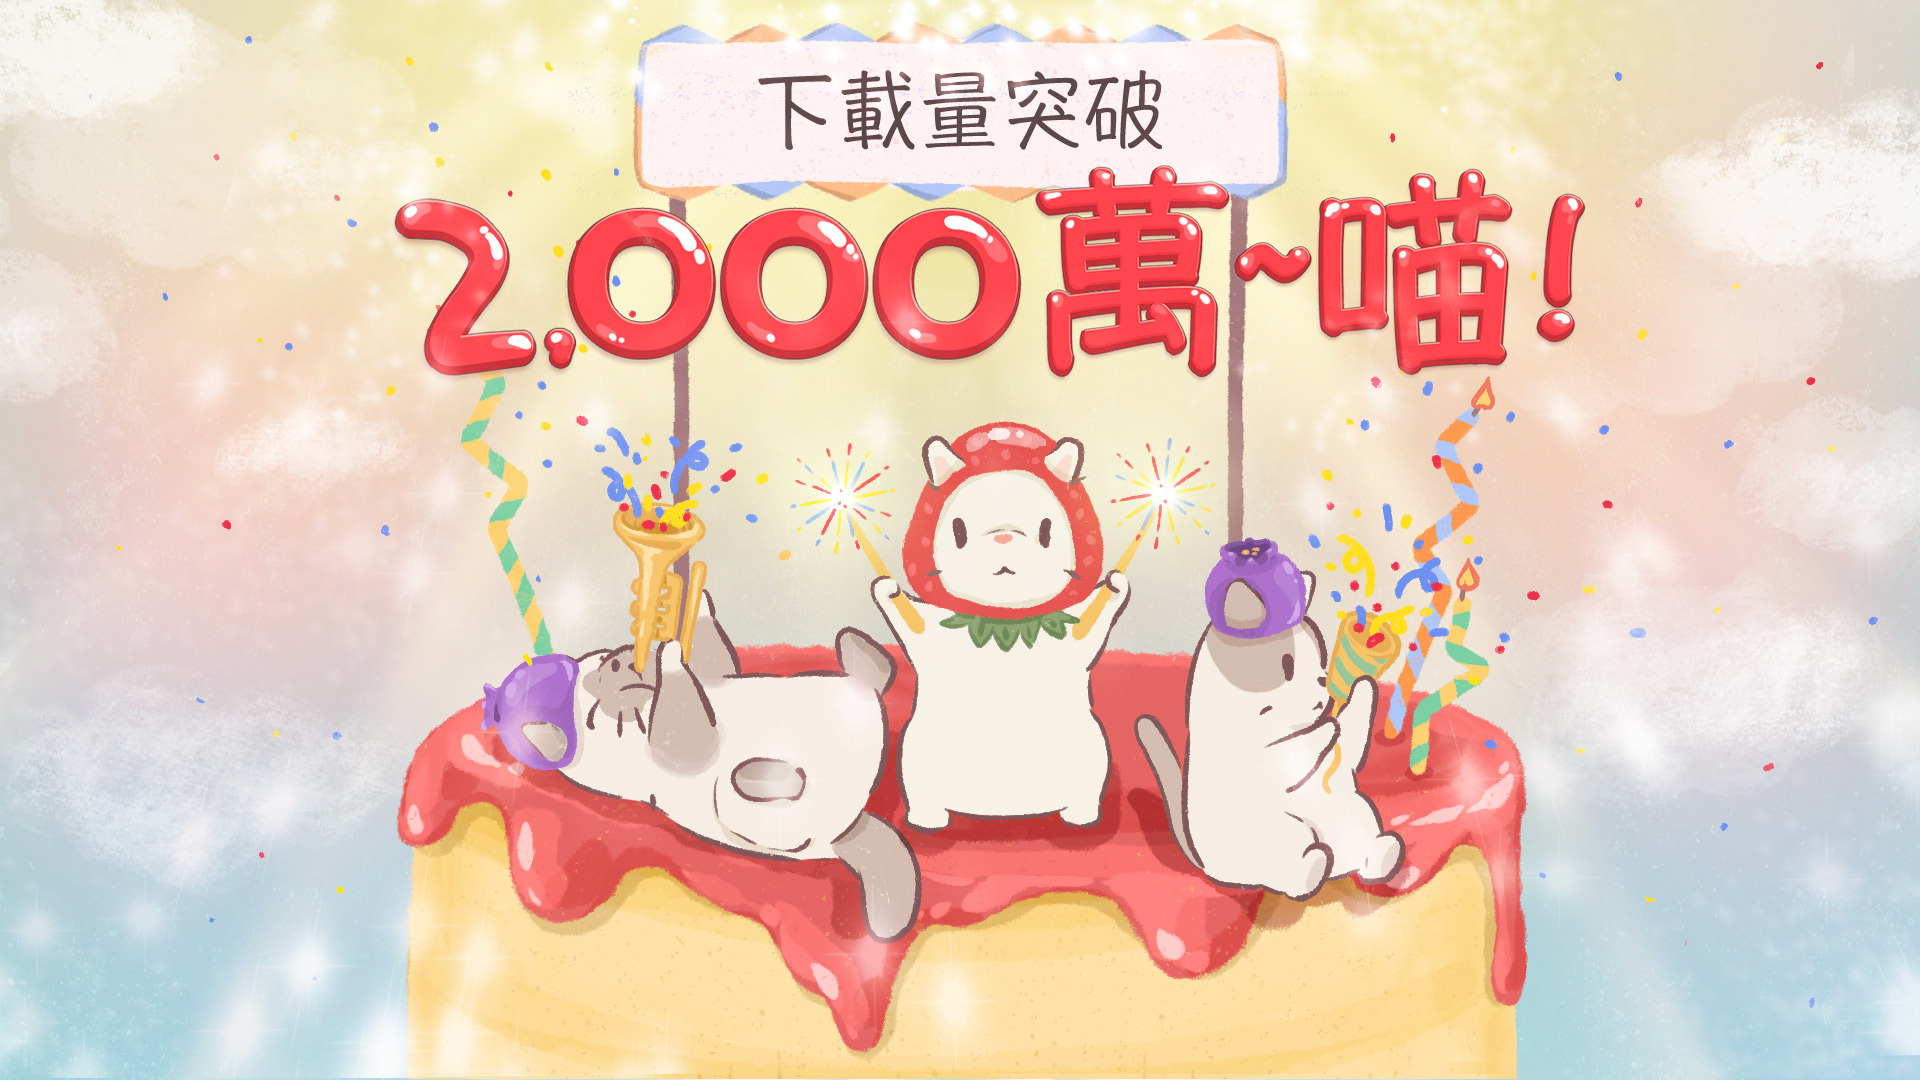 《貓咪和湯》推出全球下載量突破 2,000 萬紀念活動《Cats & Soup》